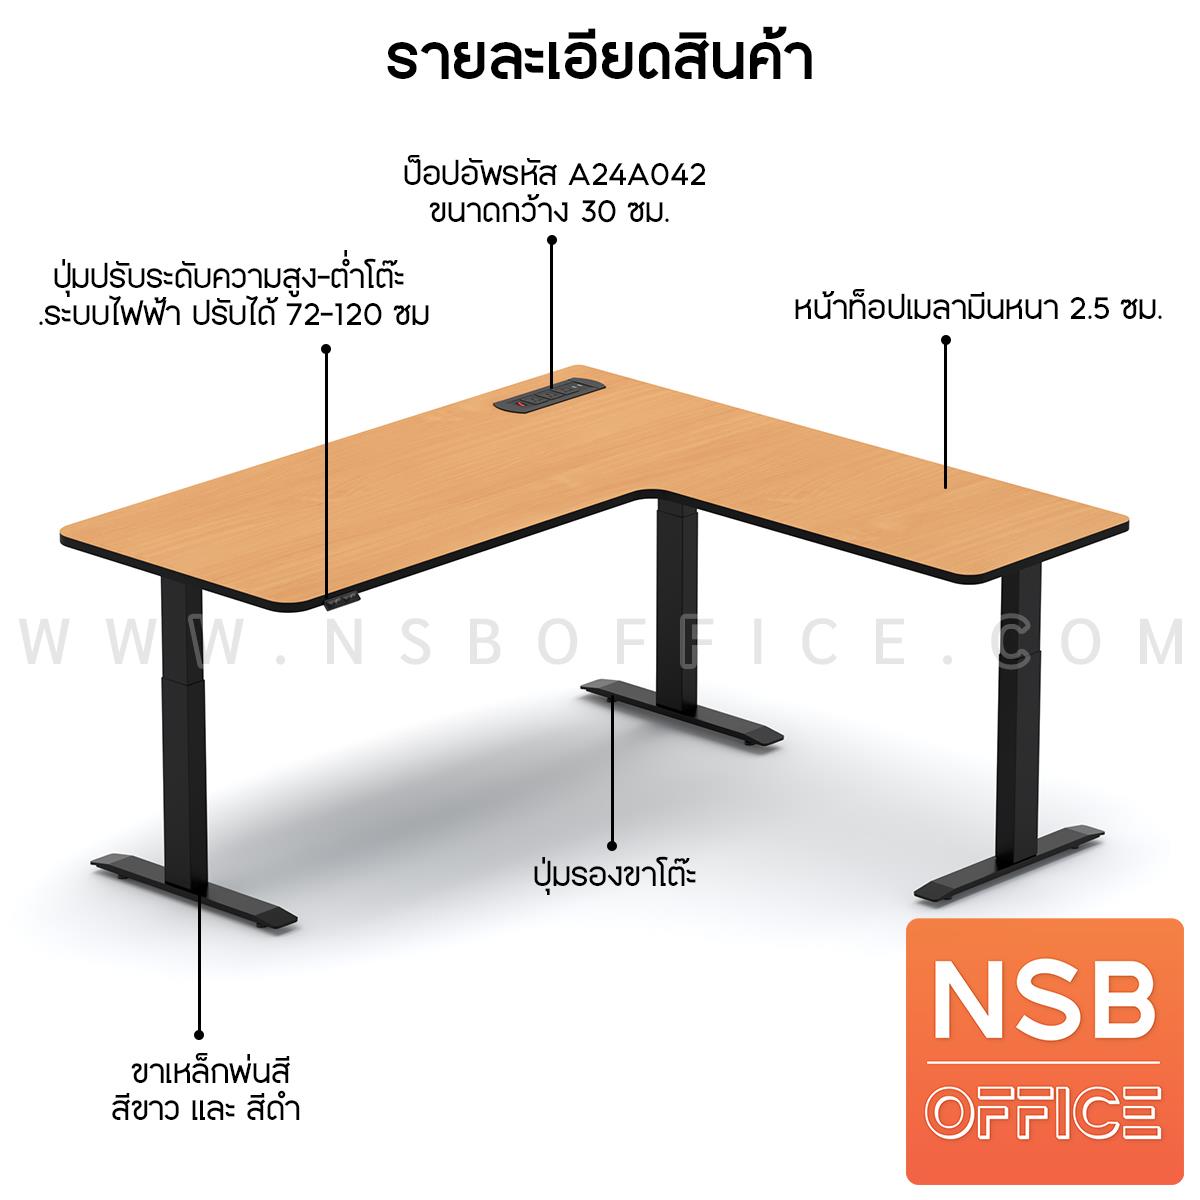 โต๊ะทำงานปรับระดับ Sit 2 Stand ทรงตัวแอล รุ่น Carmelo (คาร์เมโล่) ขนาด 160W, 180W cm.  พร้อมป็อปอัพรุ่น A24A042